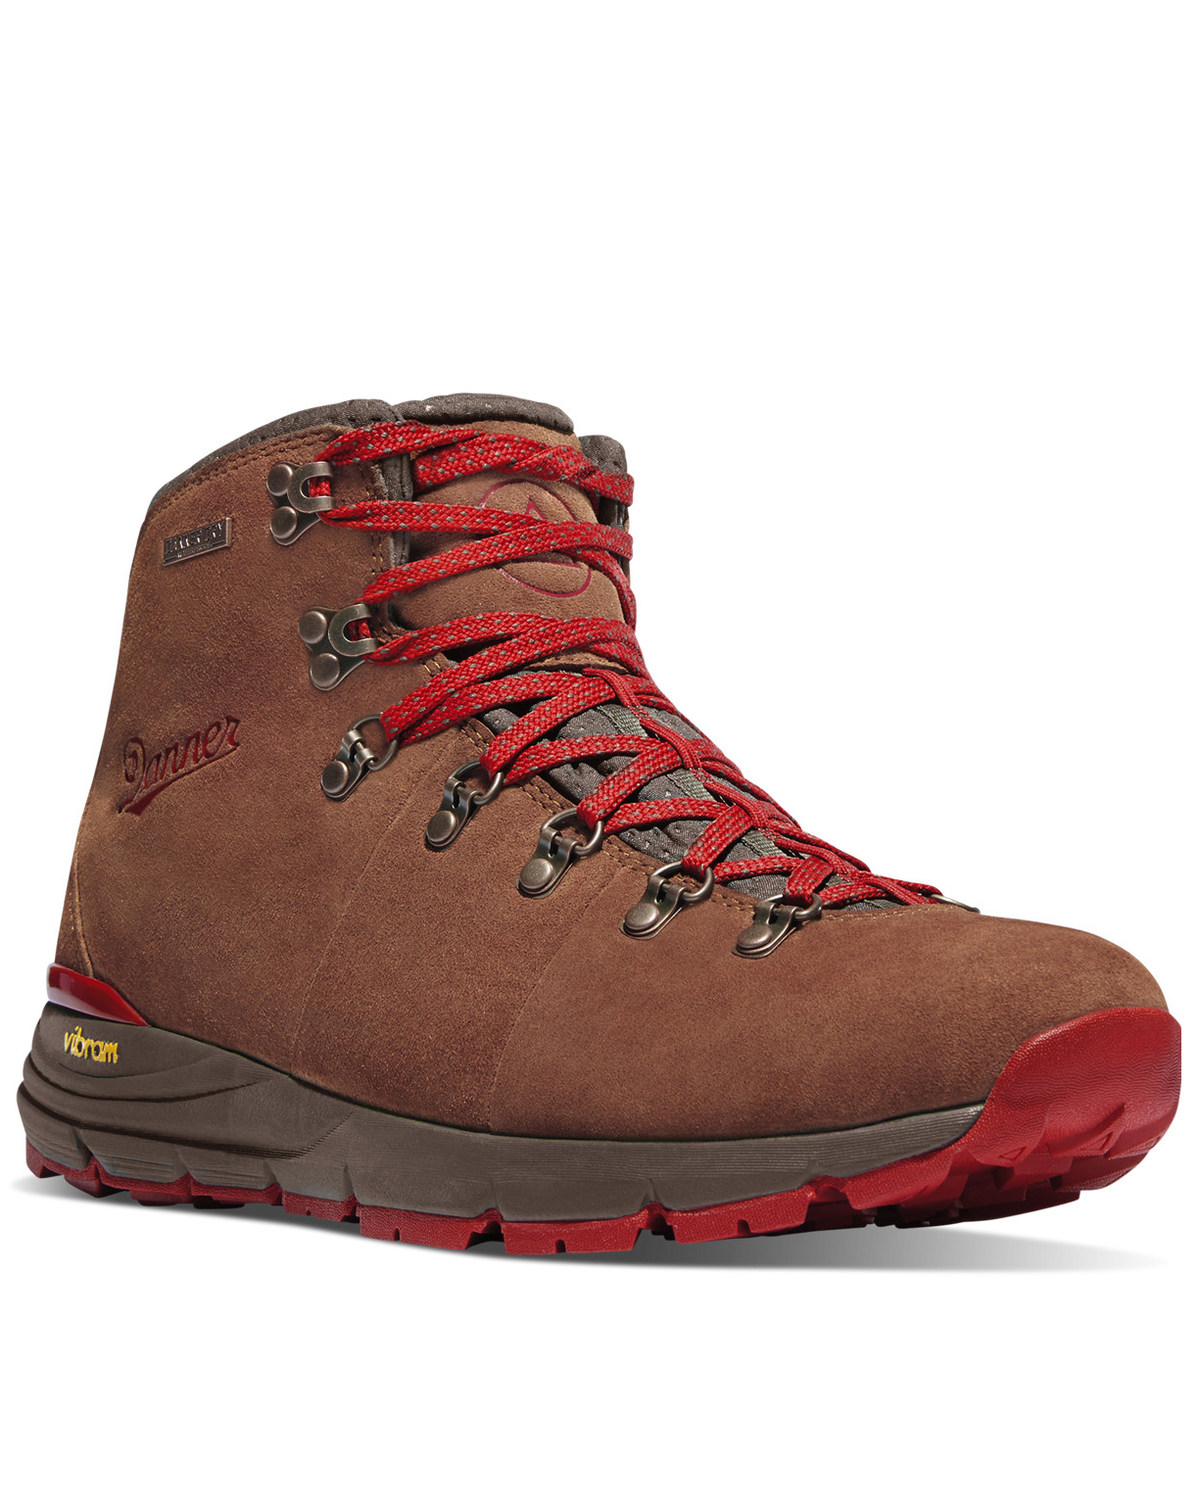 Danner Women's Mountain 600 Hiker Boots - Soft Toe